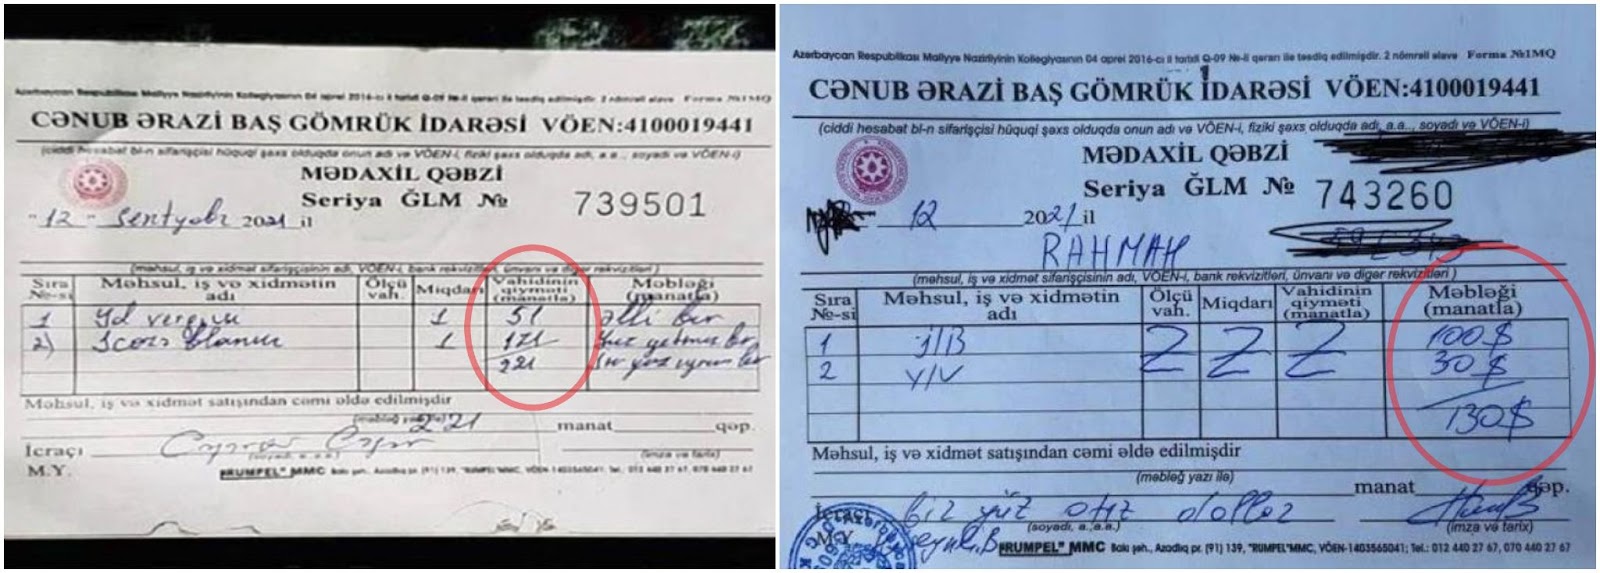 Գորիս-Կապան ճանապարհին գանձումների վերաբերյալ Ադրբեջանի պաշտոնական թվերը իրատեսական չեն